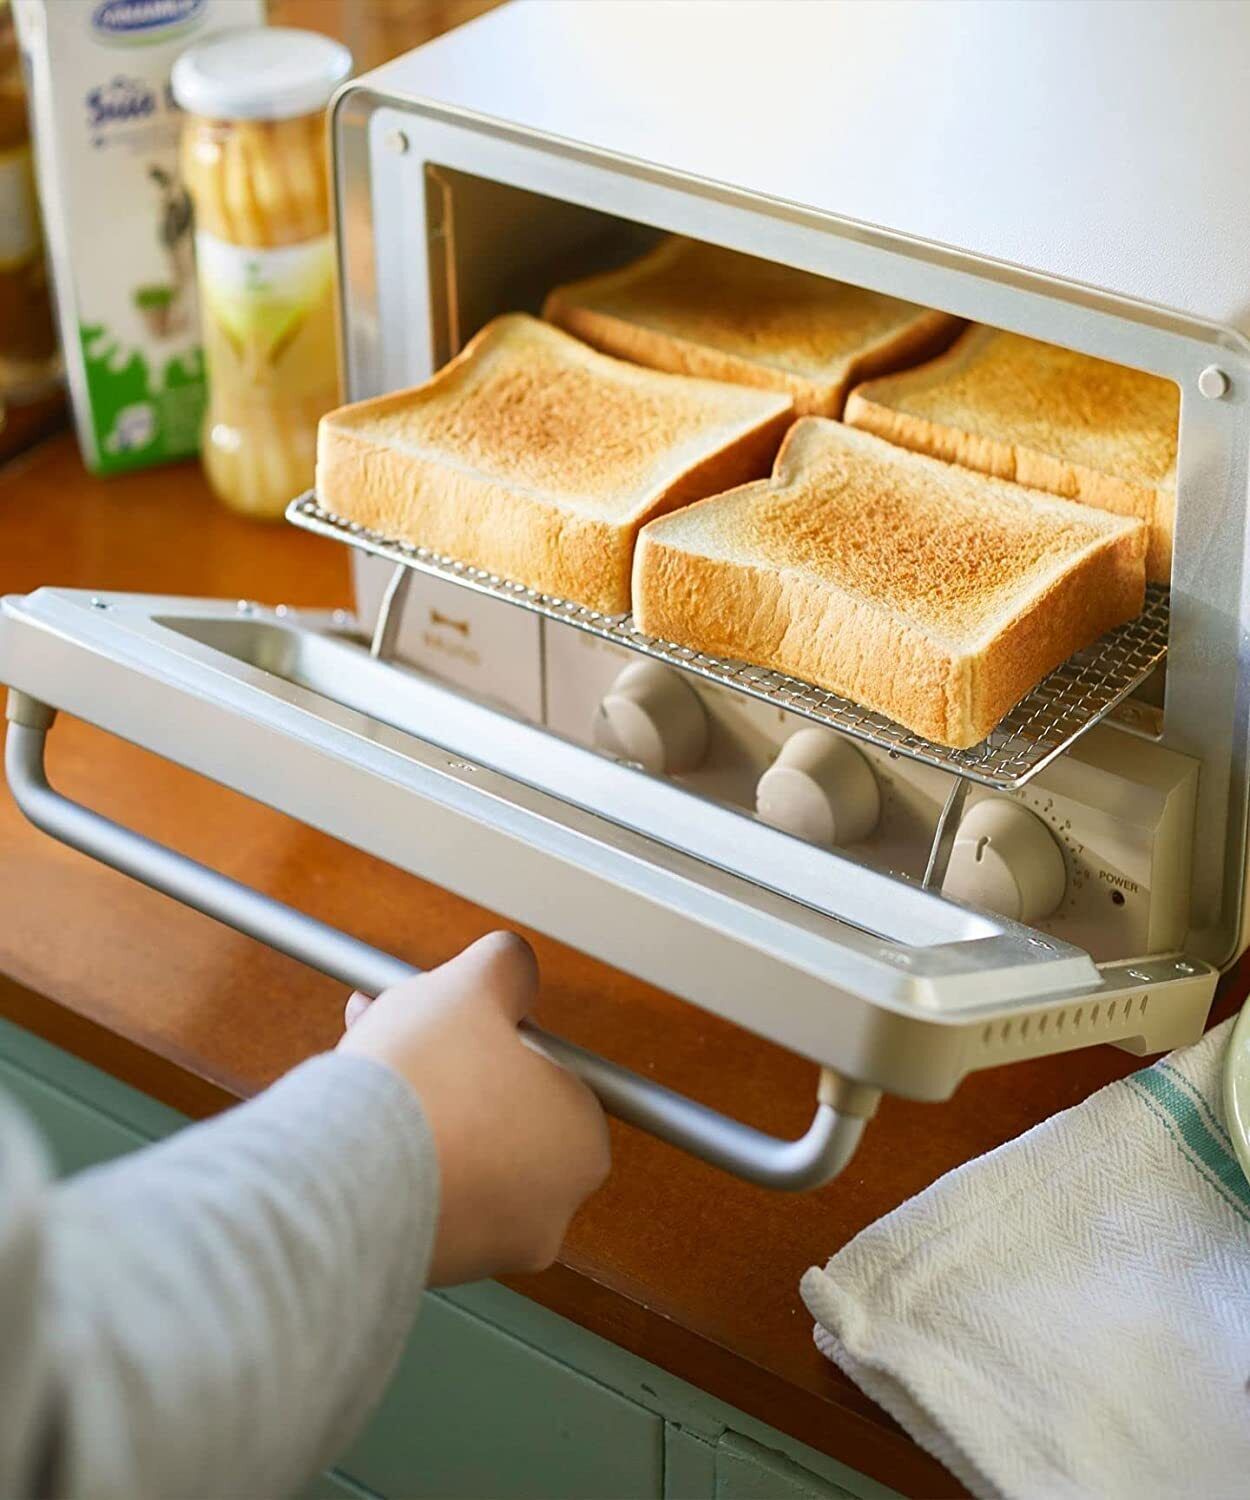 BOE067-GRG 100V BRUNO crassy+ steam and bake toaster Bakes 4 slices bread New